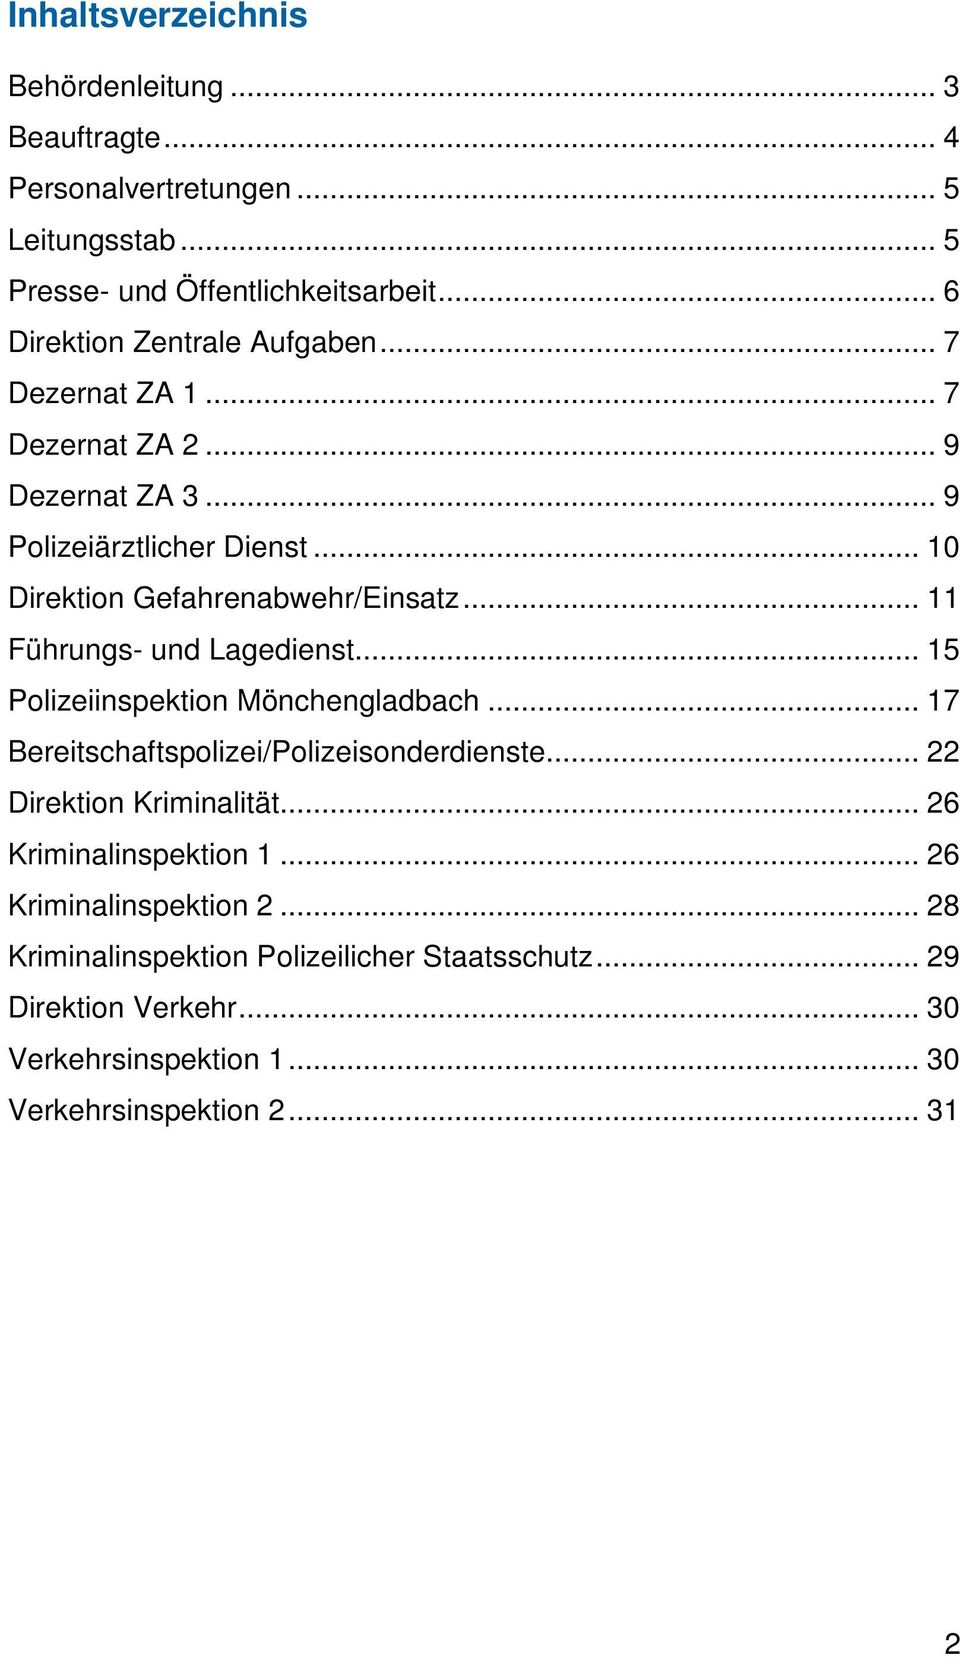 .. 11 Führungs- und Lagedienst... 15 Polizeiinspektion Mönchengladbach... 17 Bereitschaftspolizei/Polizeisonderdienste... 22 Direktion Kriminalität.